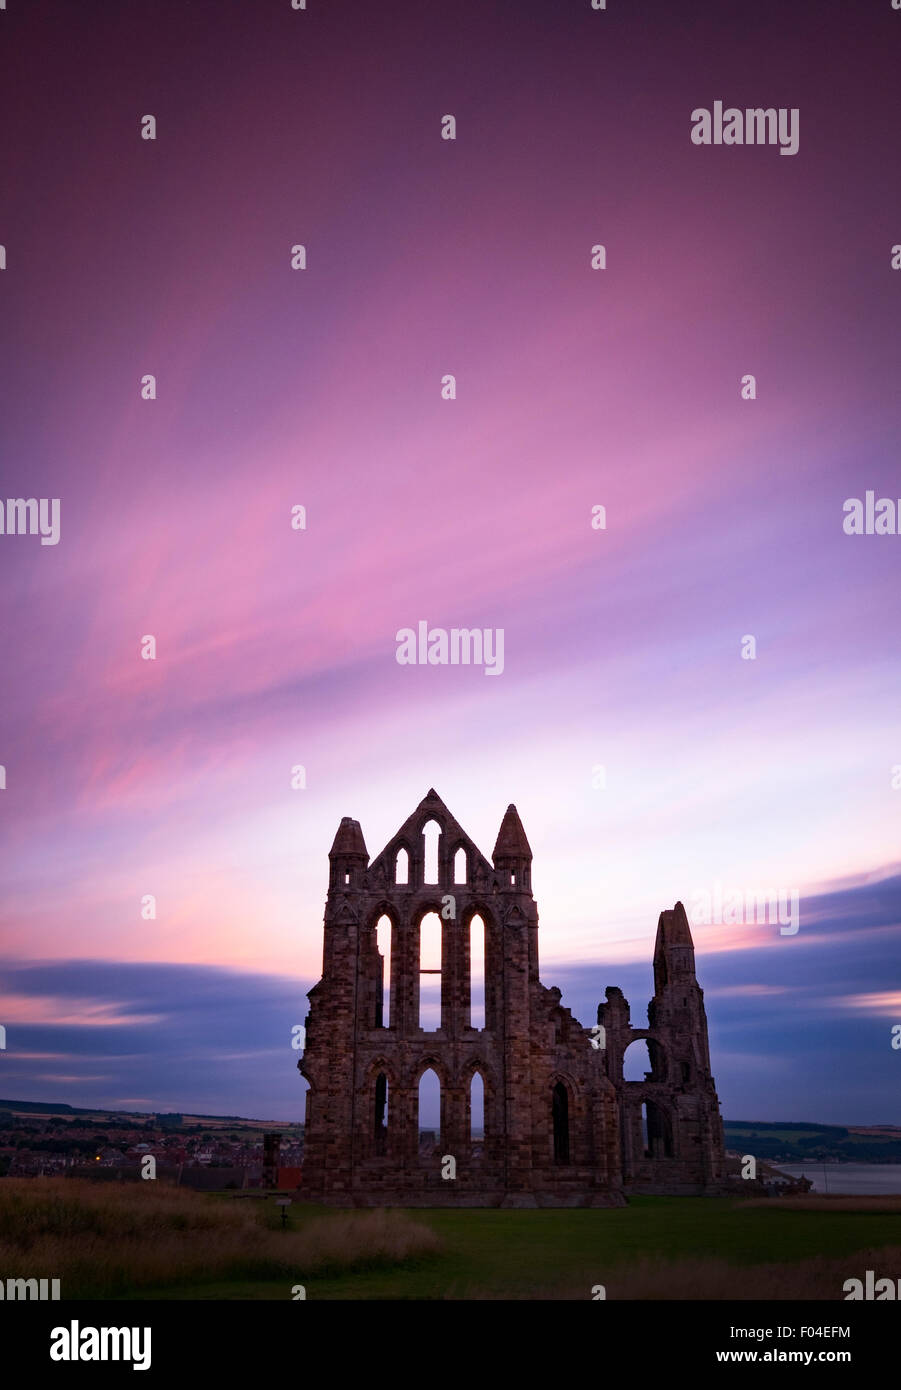 L'Abbaye de Whitby de Whitby, dans le Yorkshire, UK en photo au coucher du soleil Banque D'Images